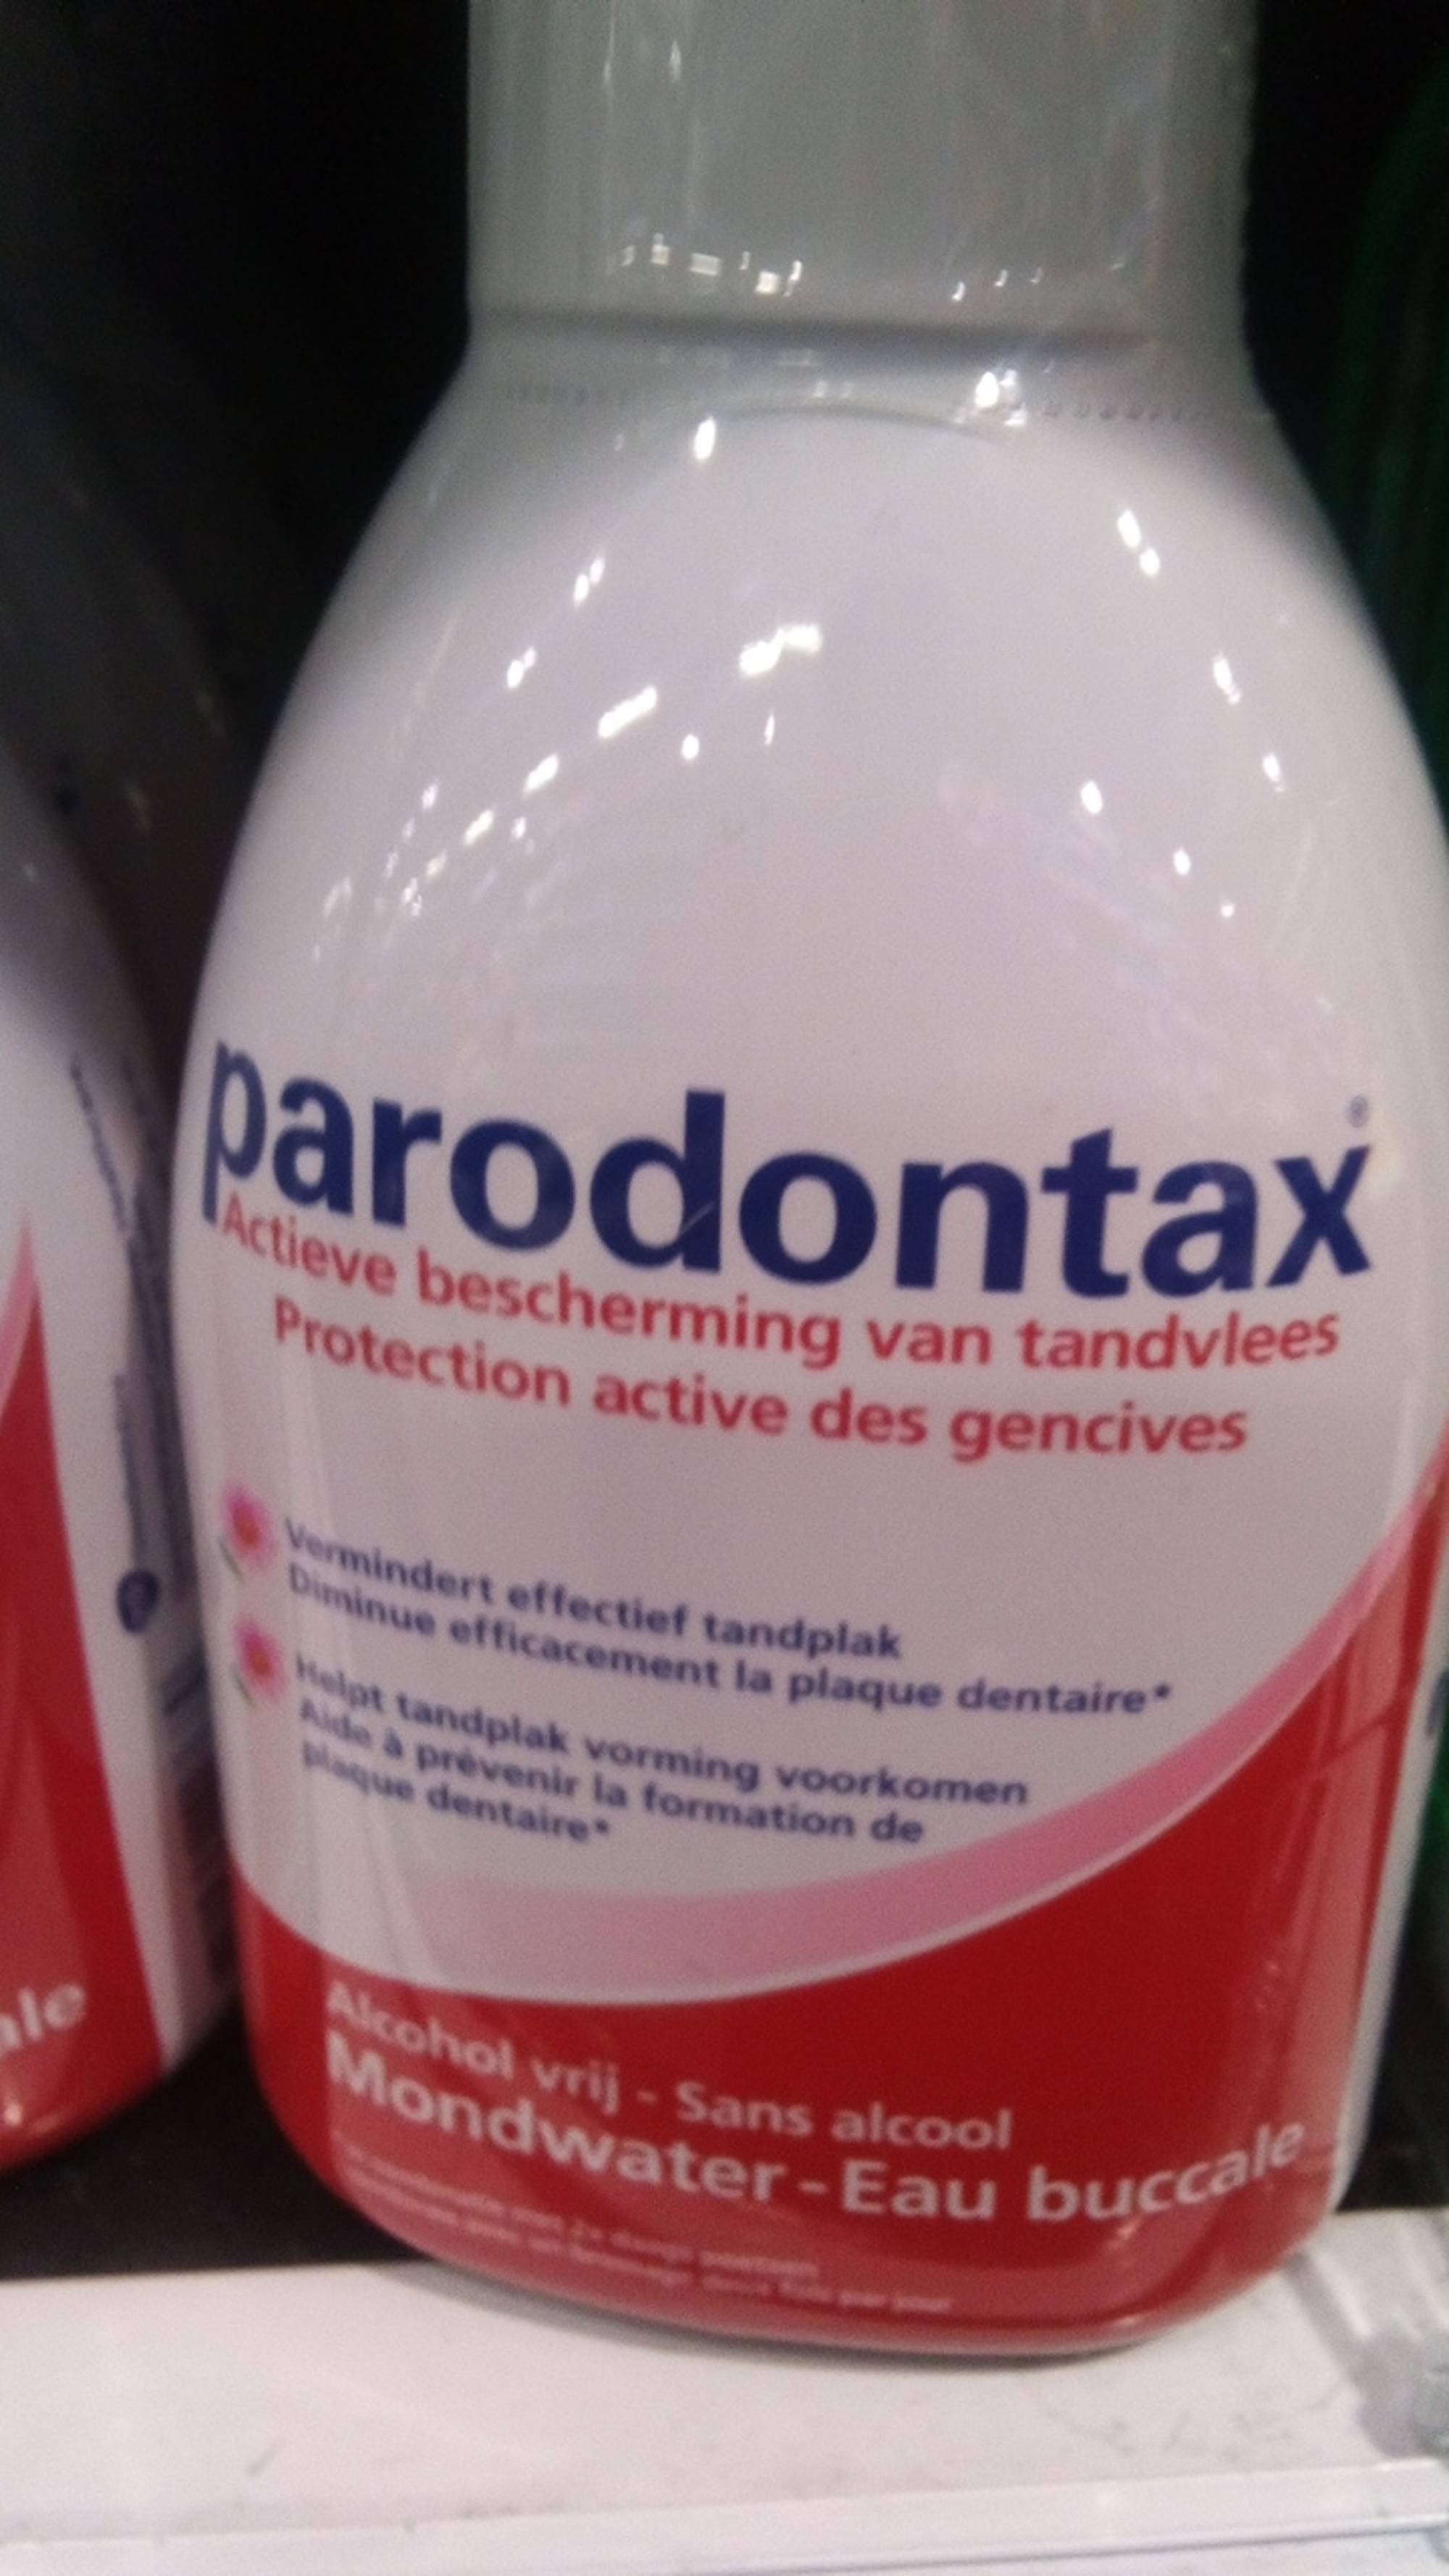 PARODONTAX - Protection active des gencives - Eau buccale